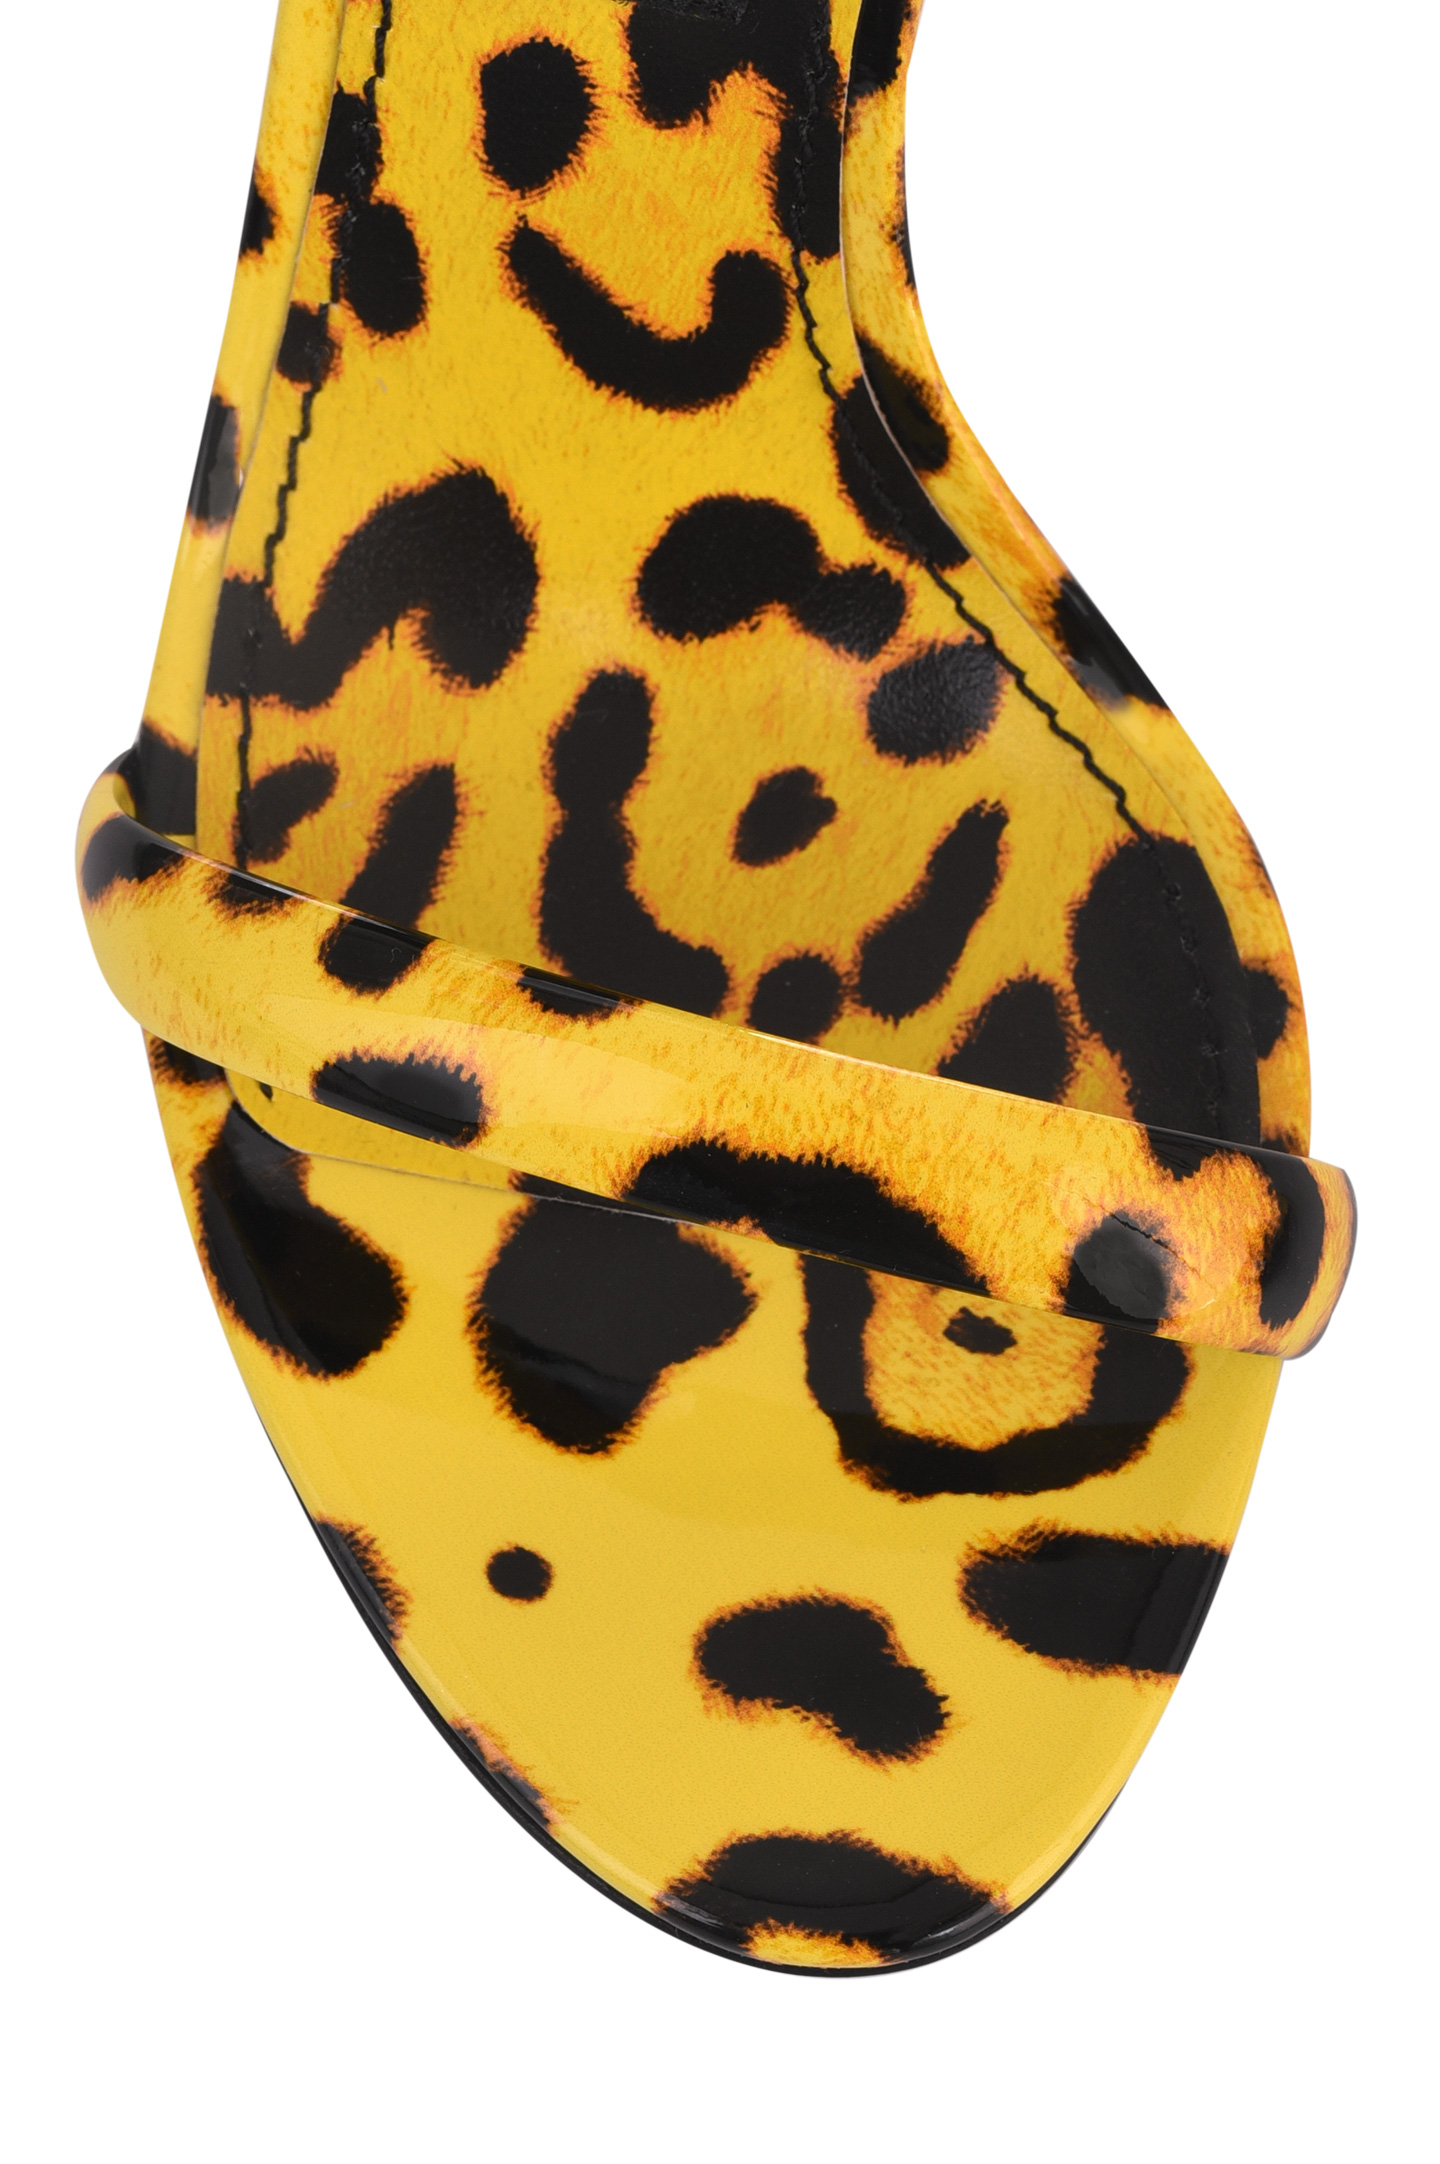 Босоножки DOLCE & GABBANA CR1173 AQ512, цвет: Леопардовый, Женский